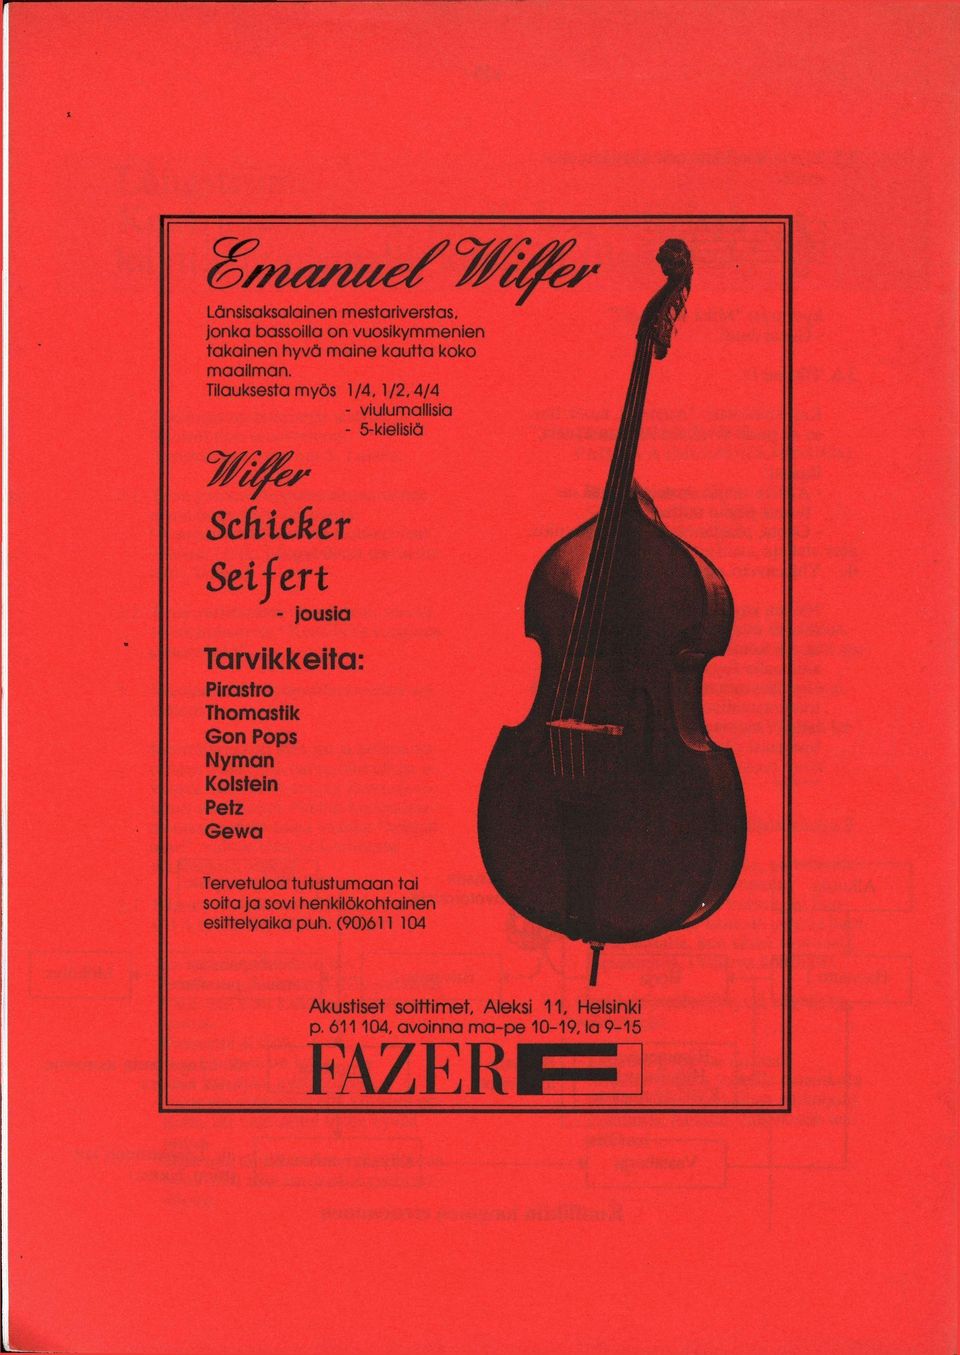 Tilauksesta myös 1/4,1/2,4/4 - viulumallisia - 5-kielisiä Wilfer Schicker Seifert - jousia Tarvikkeita: Pirastro